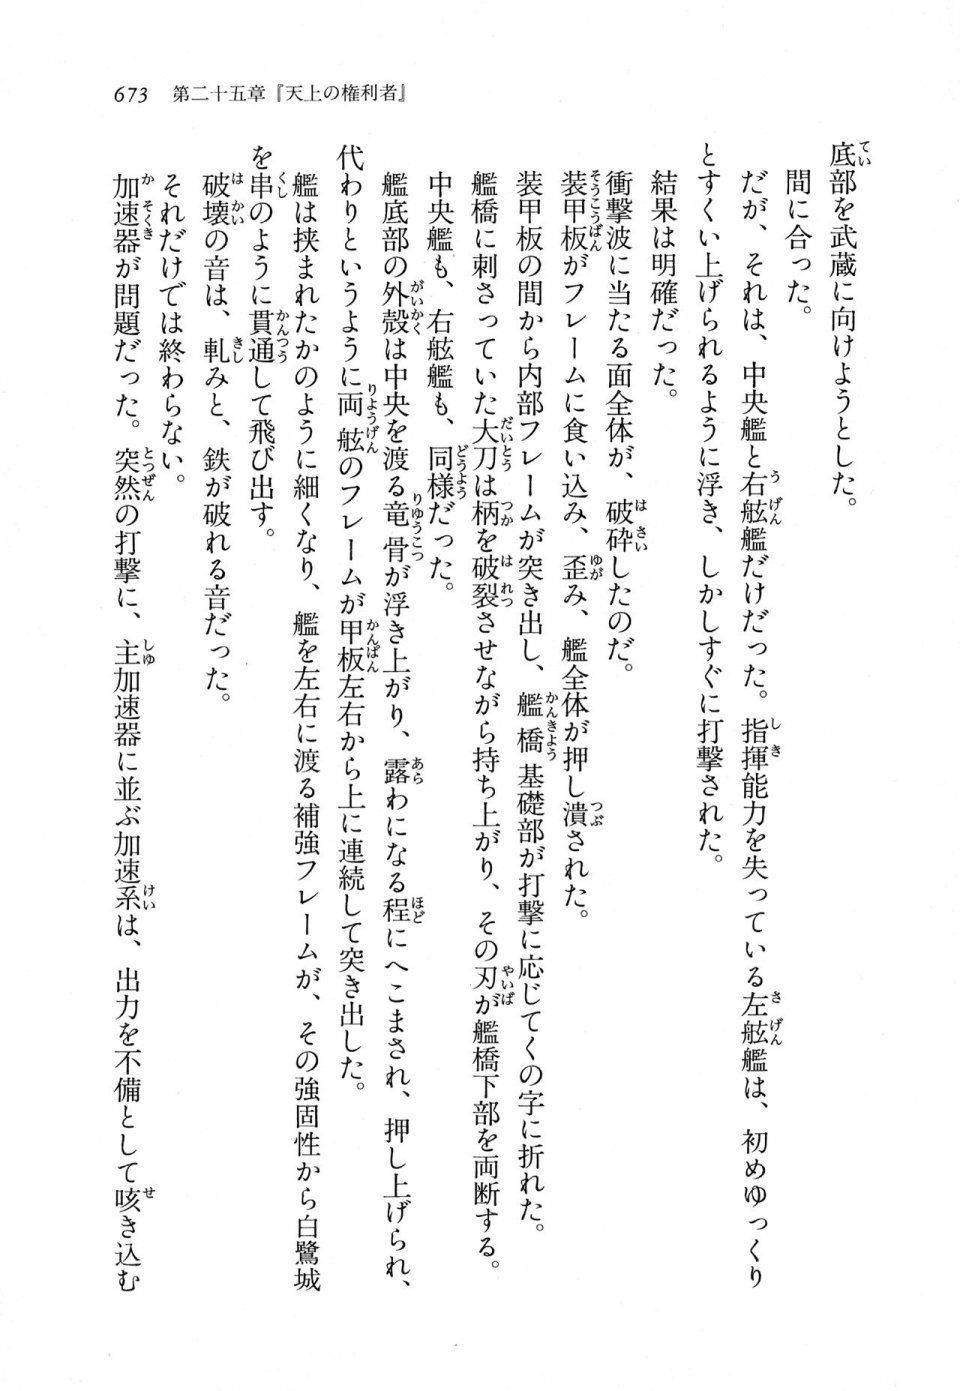 Kyoukai Senjou no Horizon LN Vol 11(5A) - Photo #673